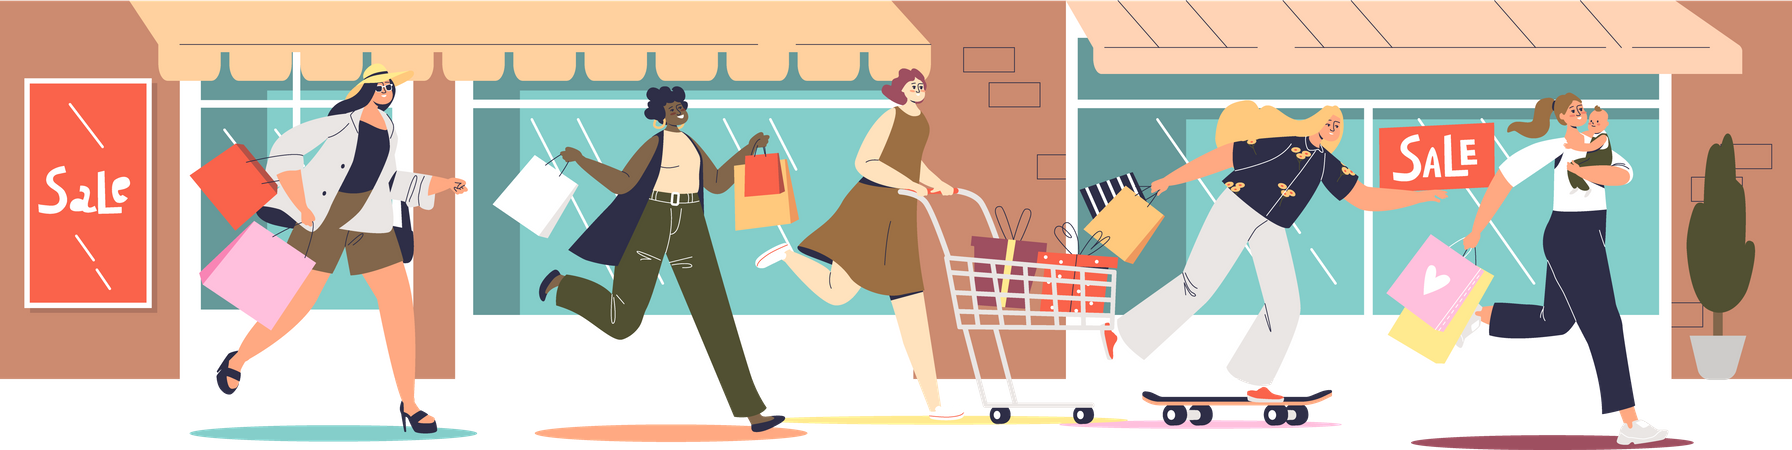 Mujeres corriendo para comprar en la tienda  Ilustración